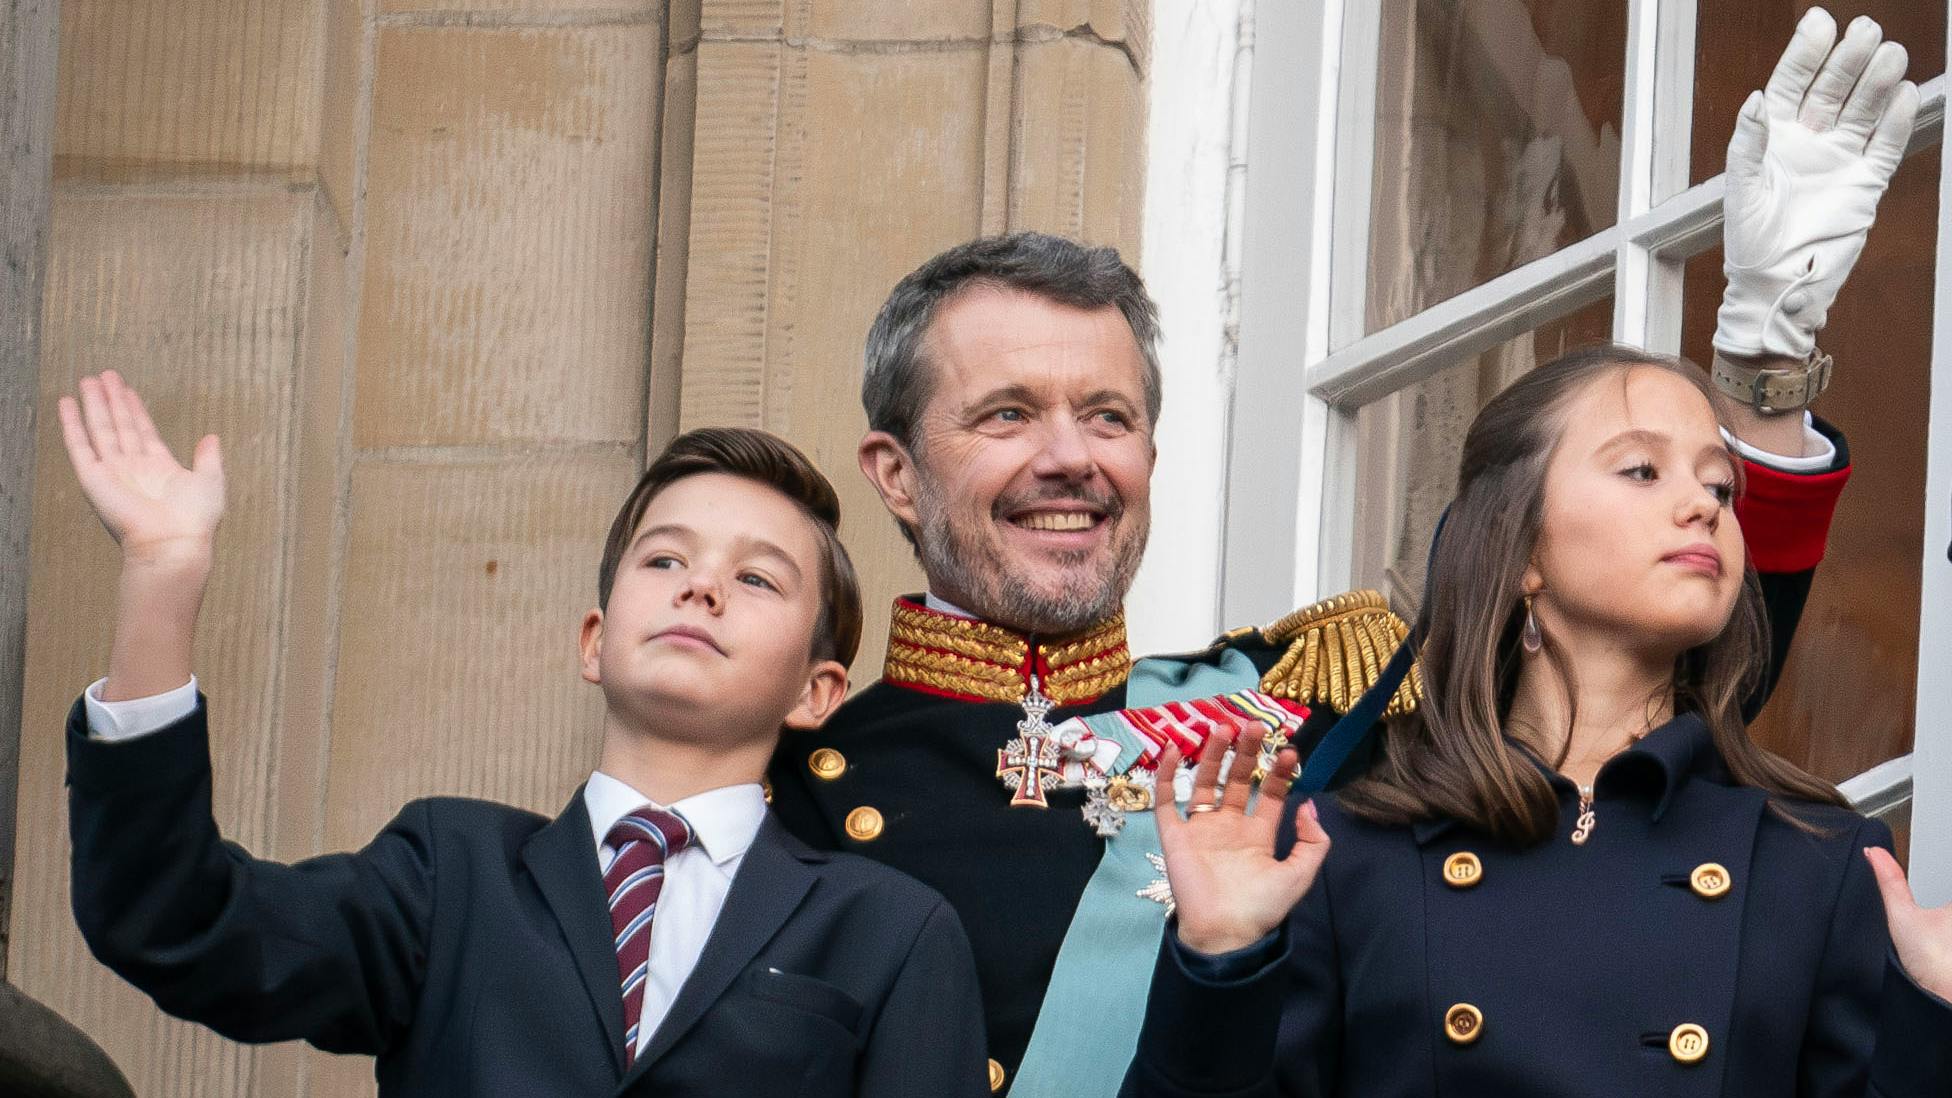 Kong Frederik med tvillingerne prins Vincent og prinsesse Josephine.